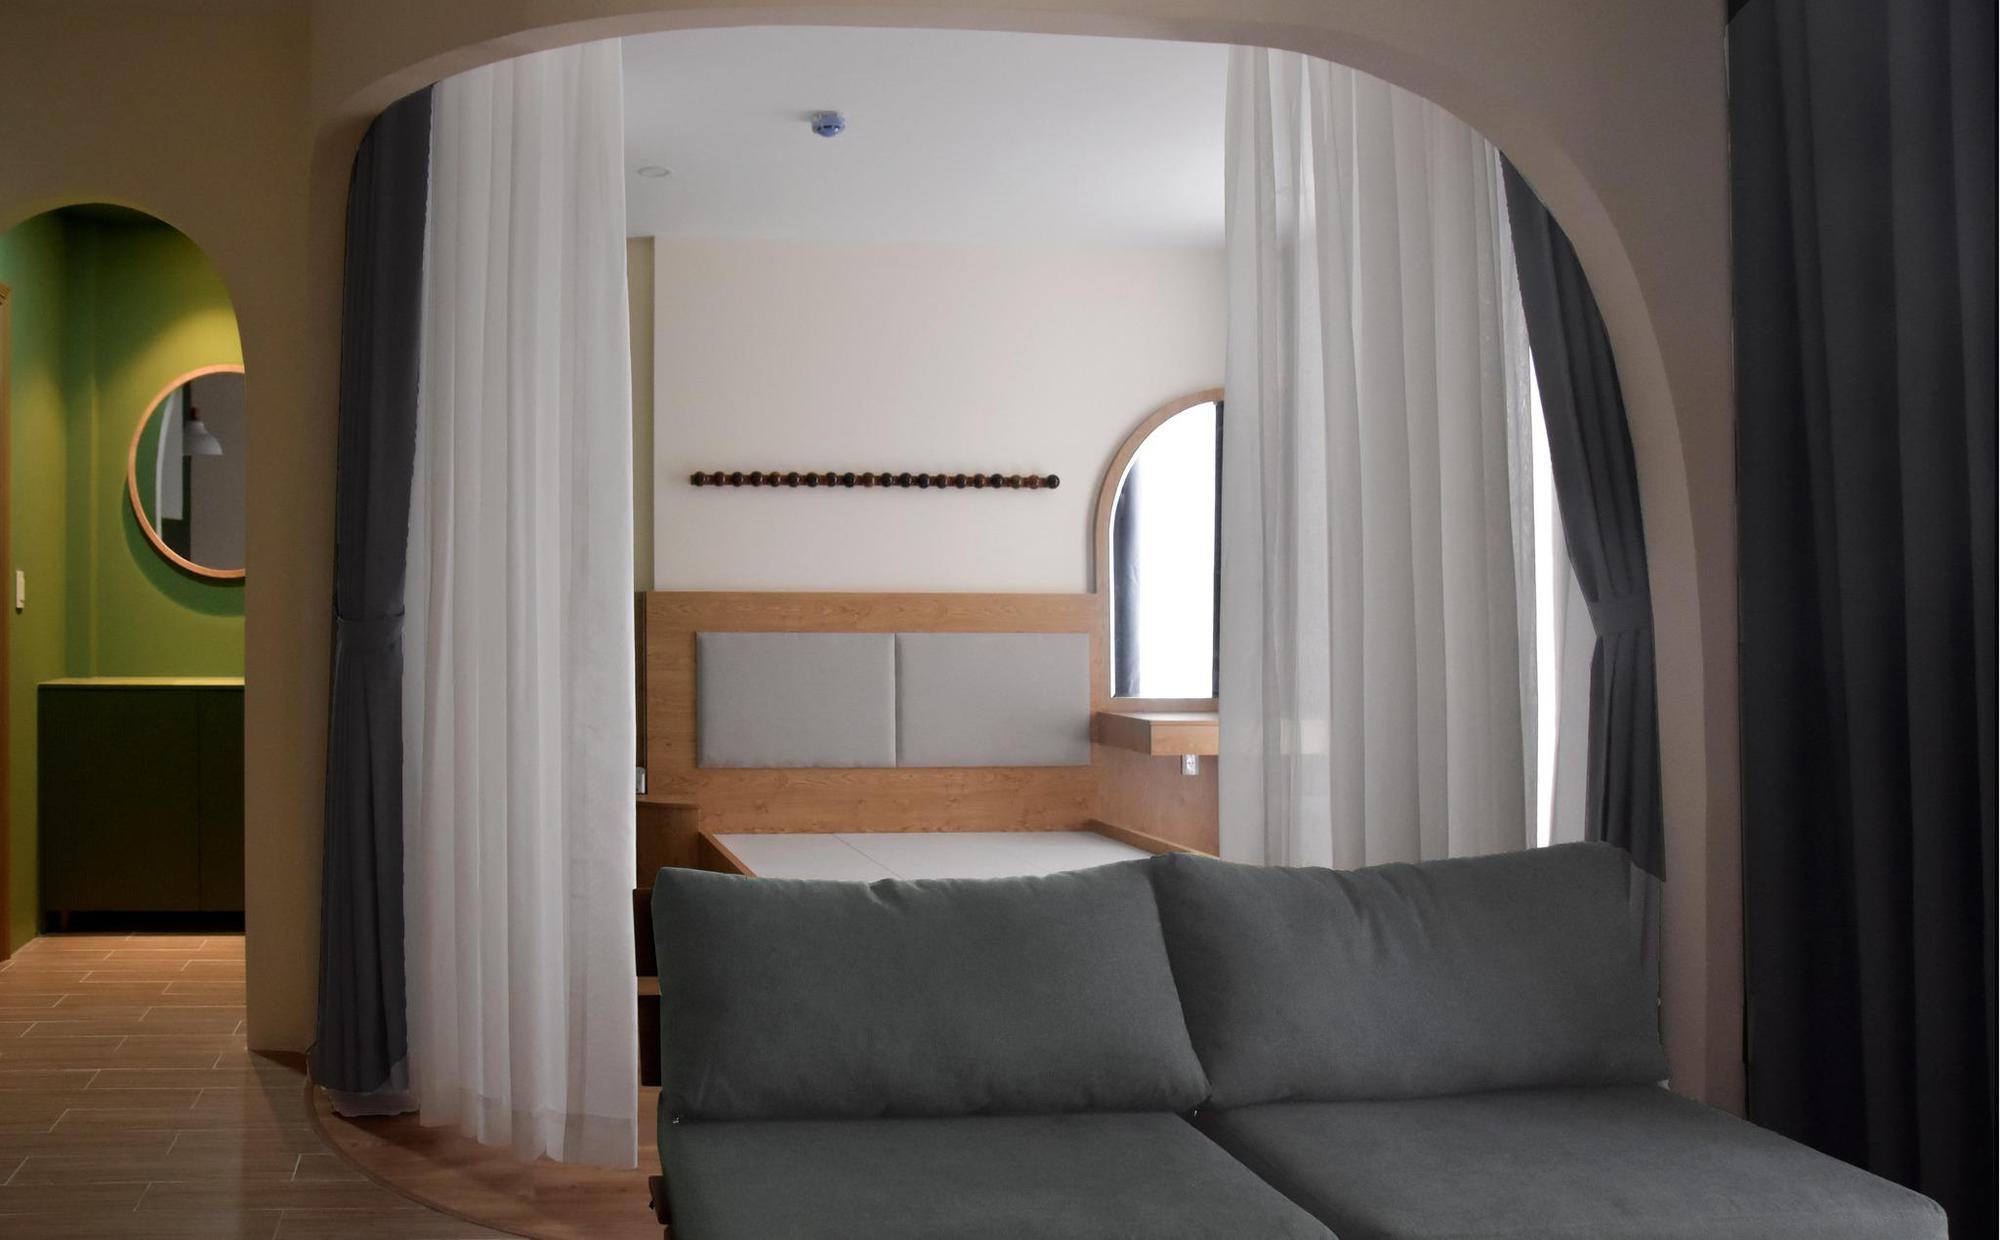 Căn hộ 1 phòng ngủ thiết kế không gian mở, phủ màu xanh lá khơi gợi nhiều xúc cảm - Ảnh 1.